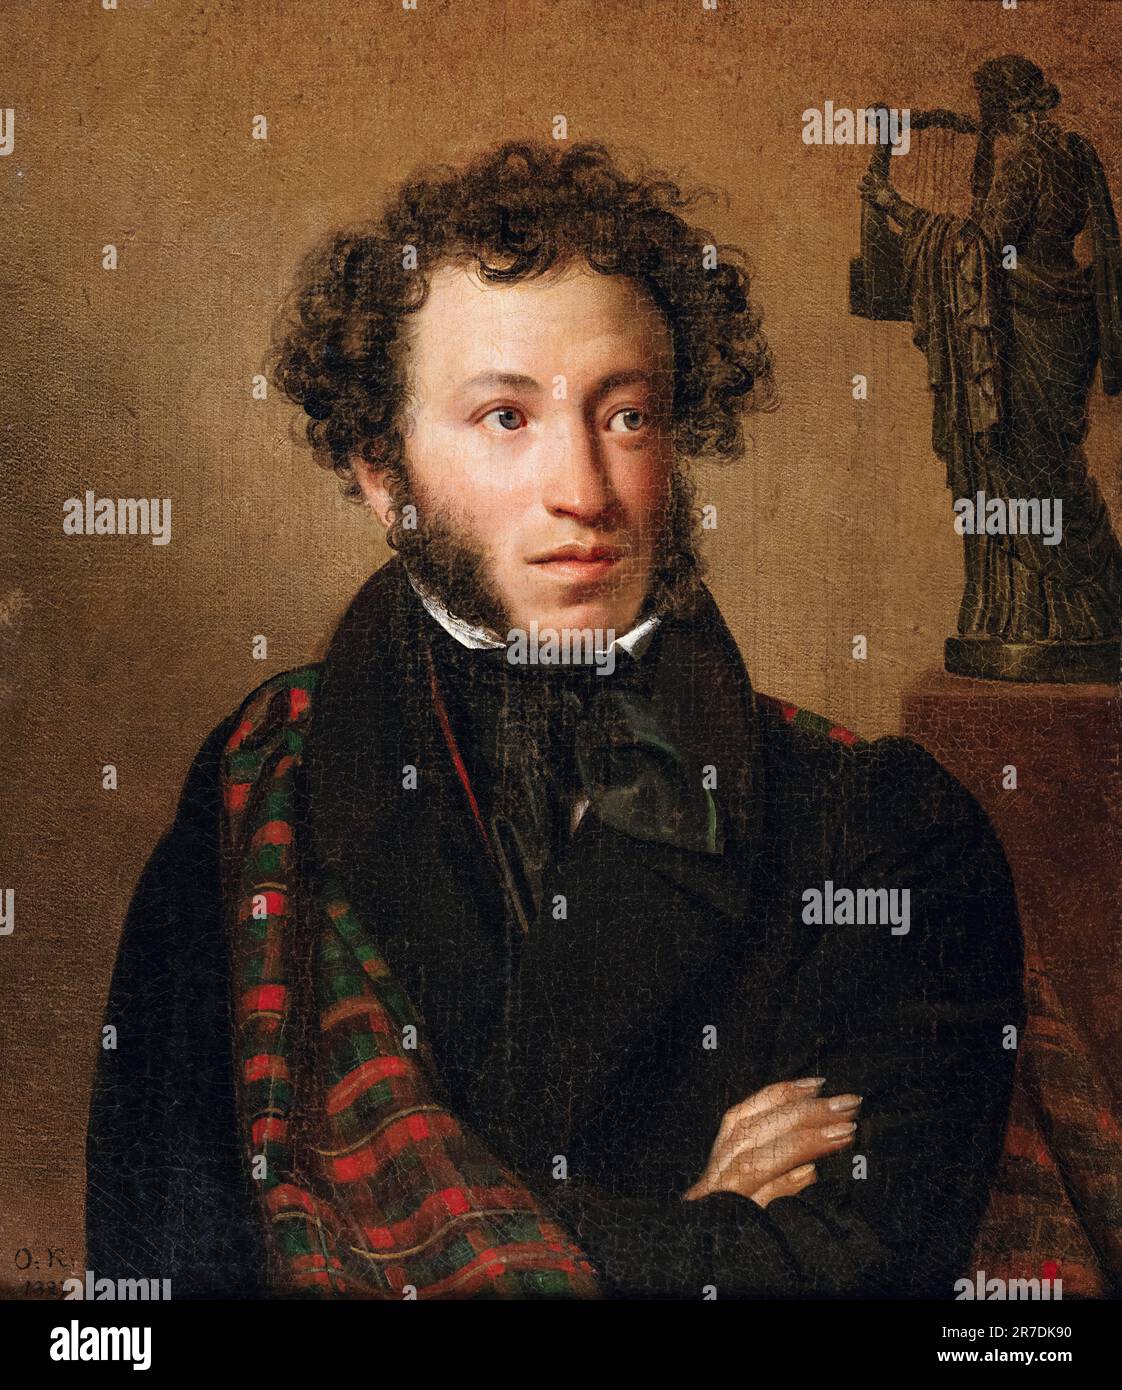 Alexander Pushkin (1799-1837), poète, dramaturge et romancier russe, portrait peint à l'huile sur toile par Orest Kiprensky, 1827 Banque D'Images